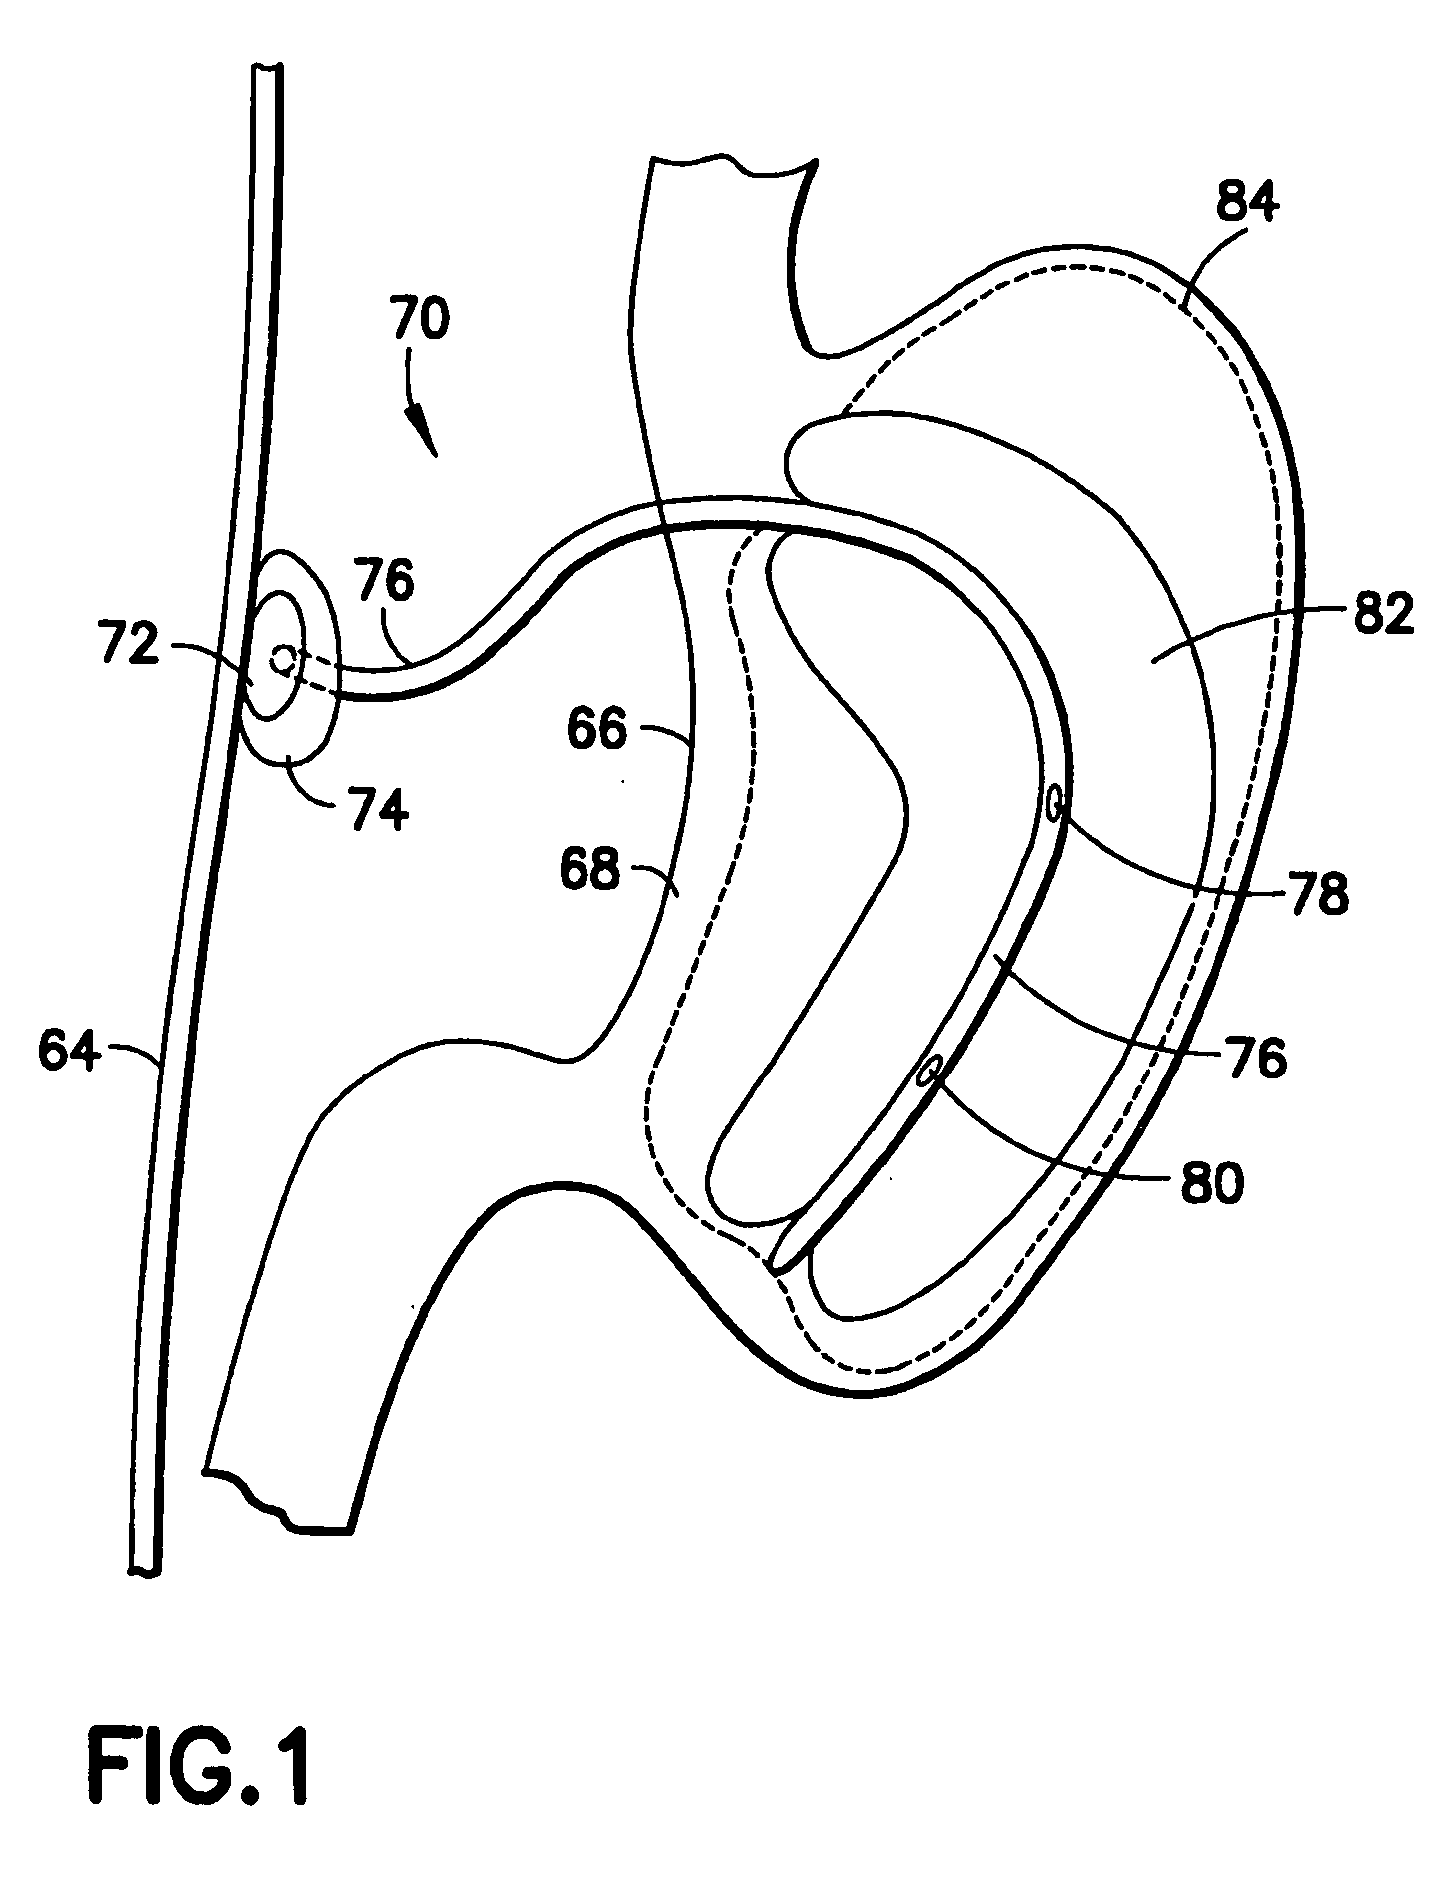 Gastro-occlusive device